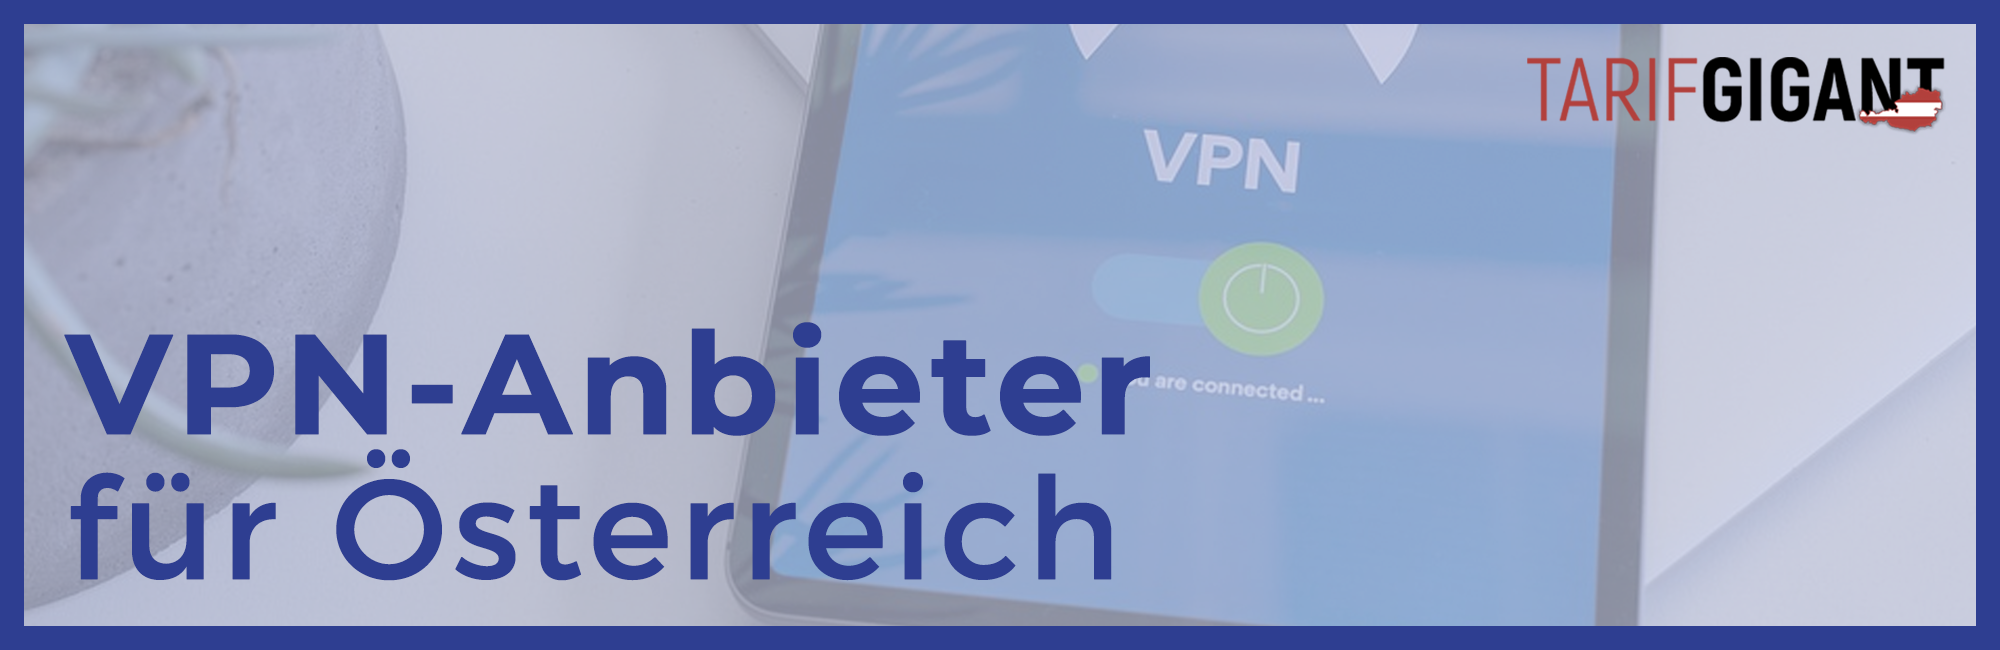 VPN Anbieter für Österreich im Vergleich